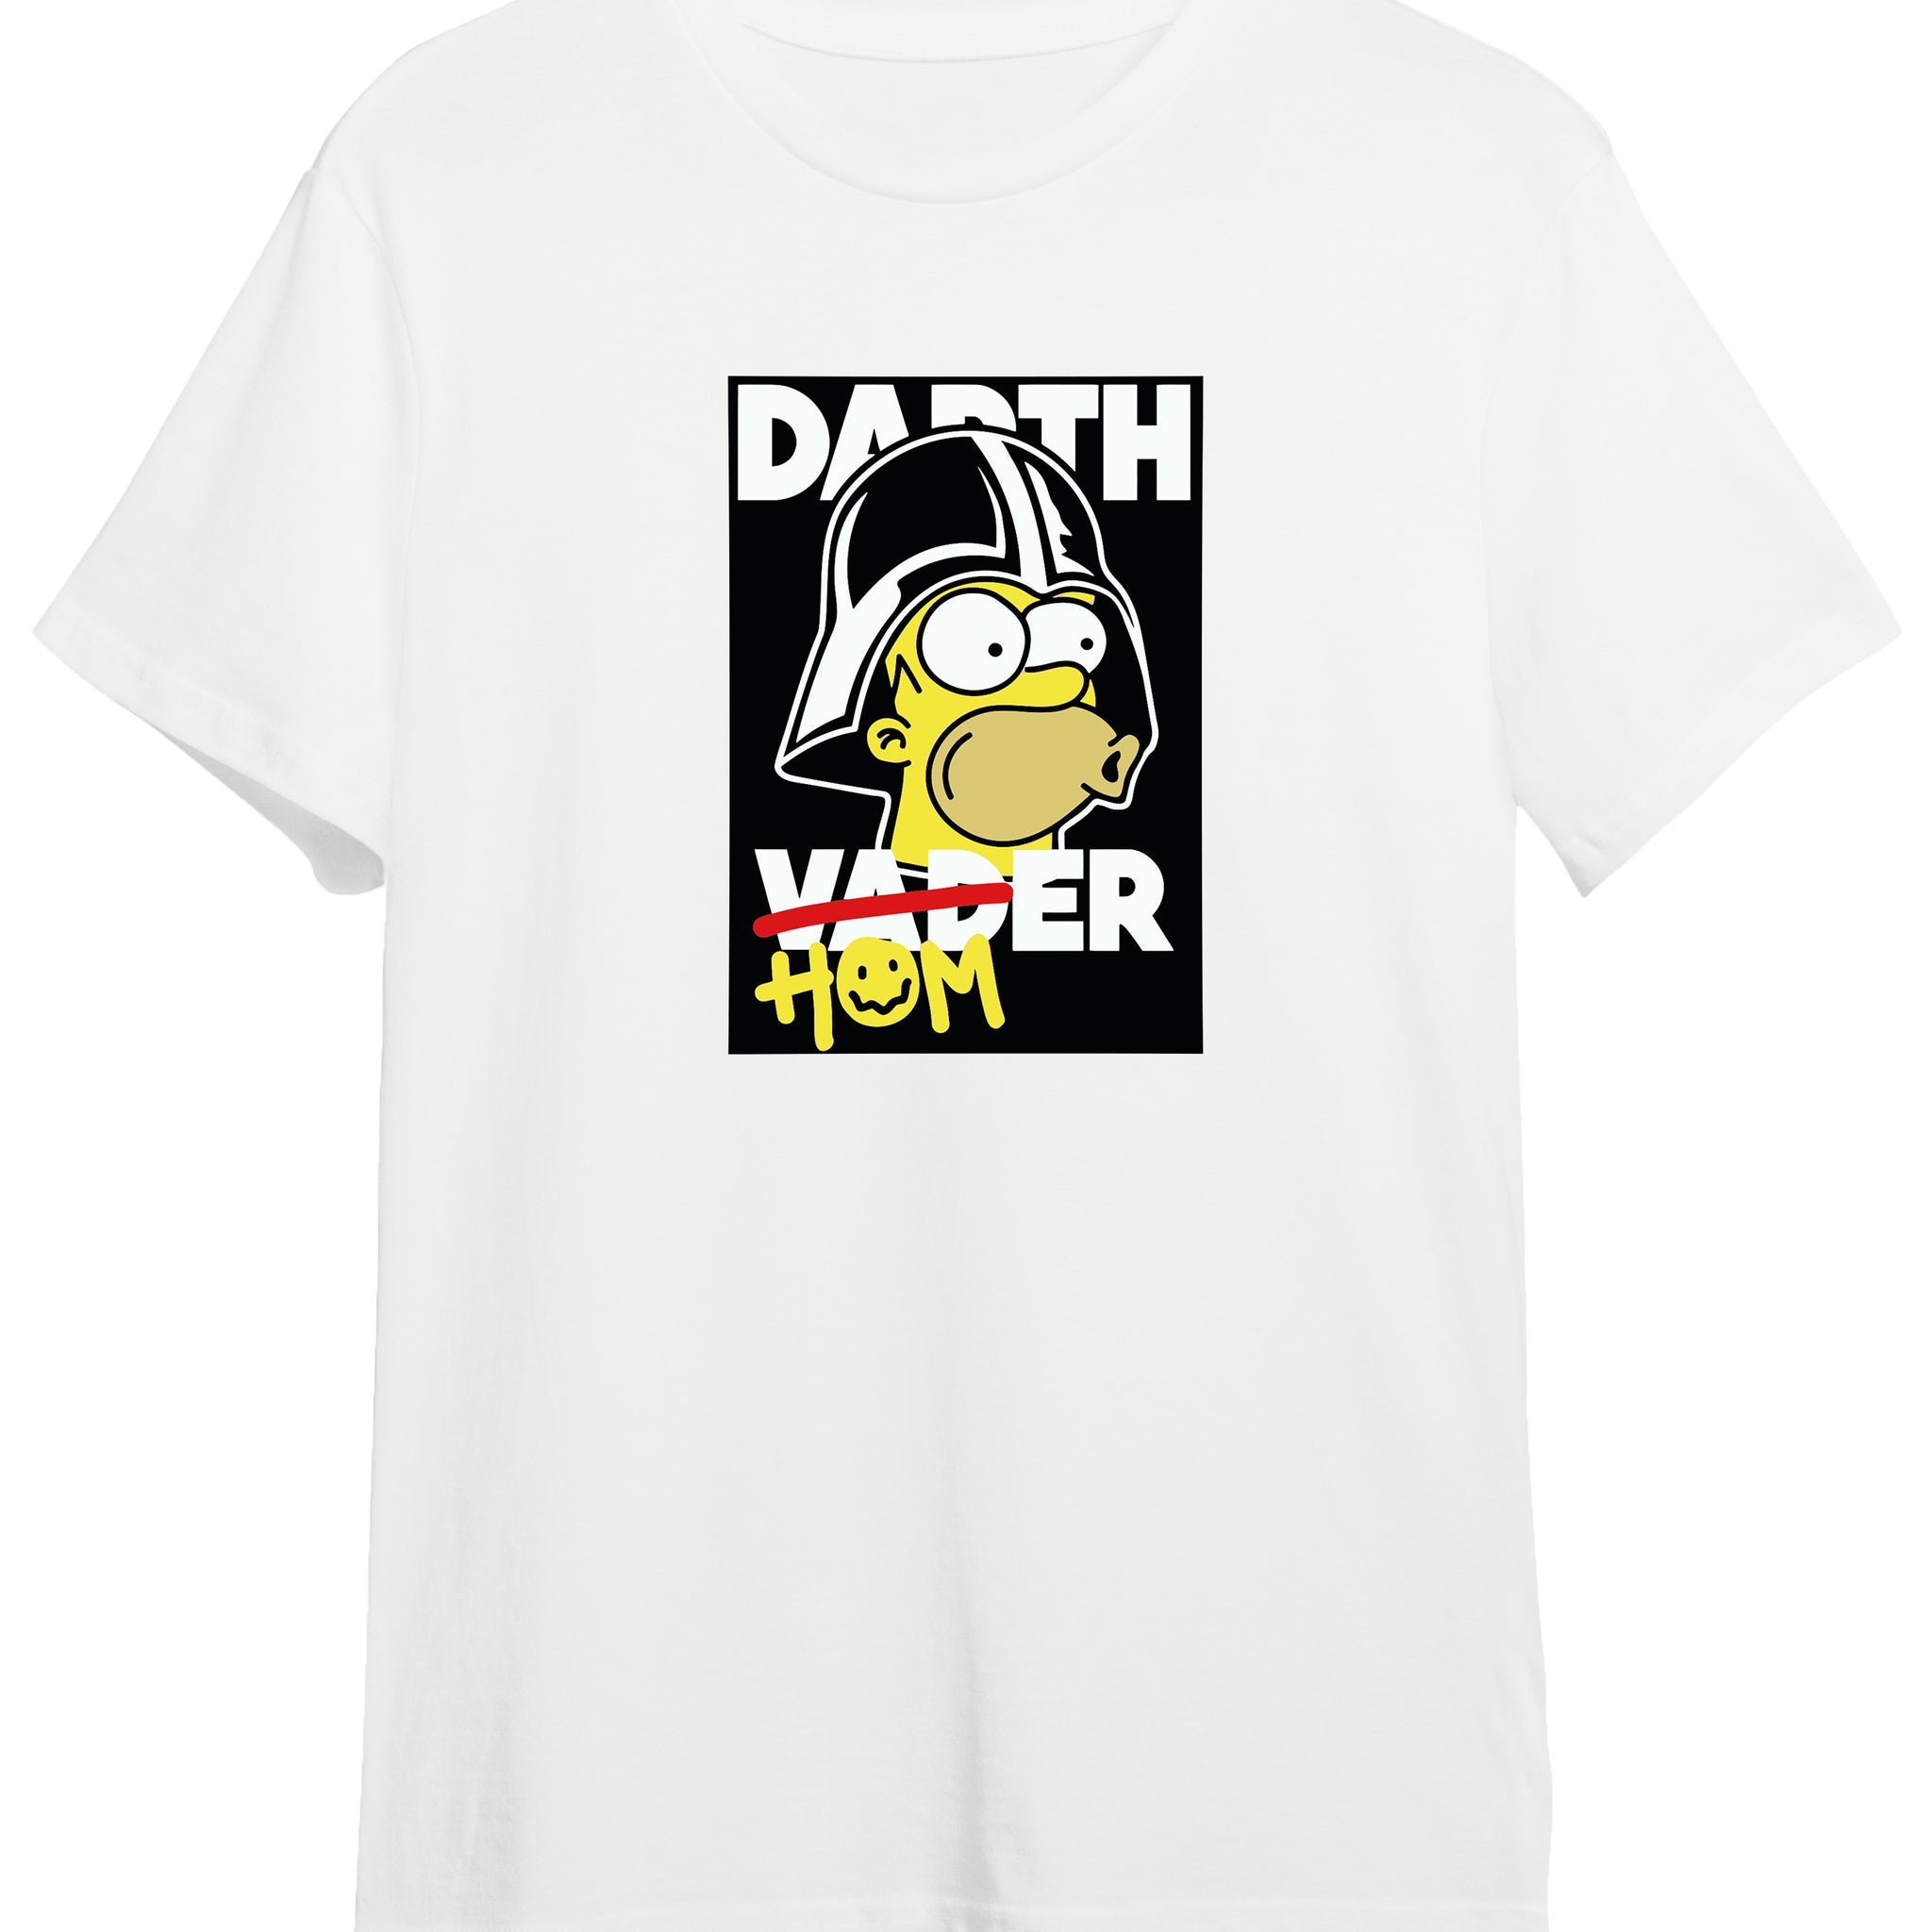 Darth Homer - Regular Tshirt